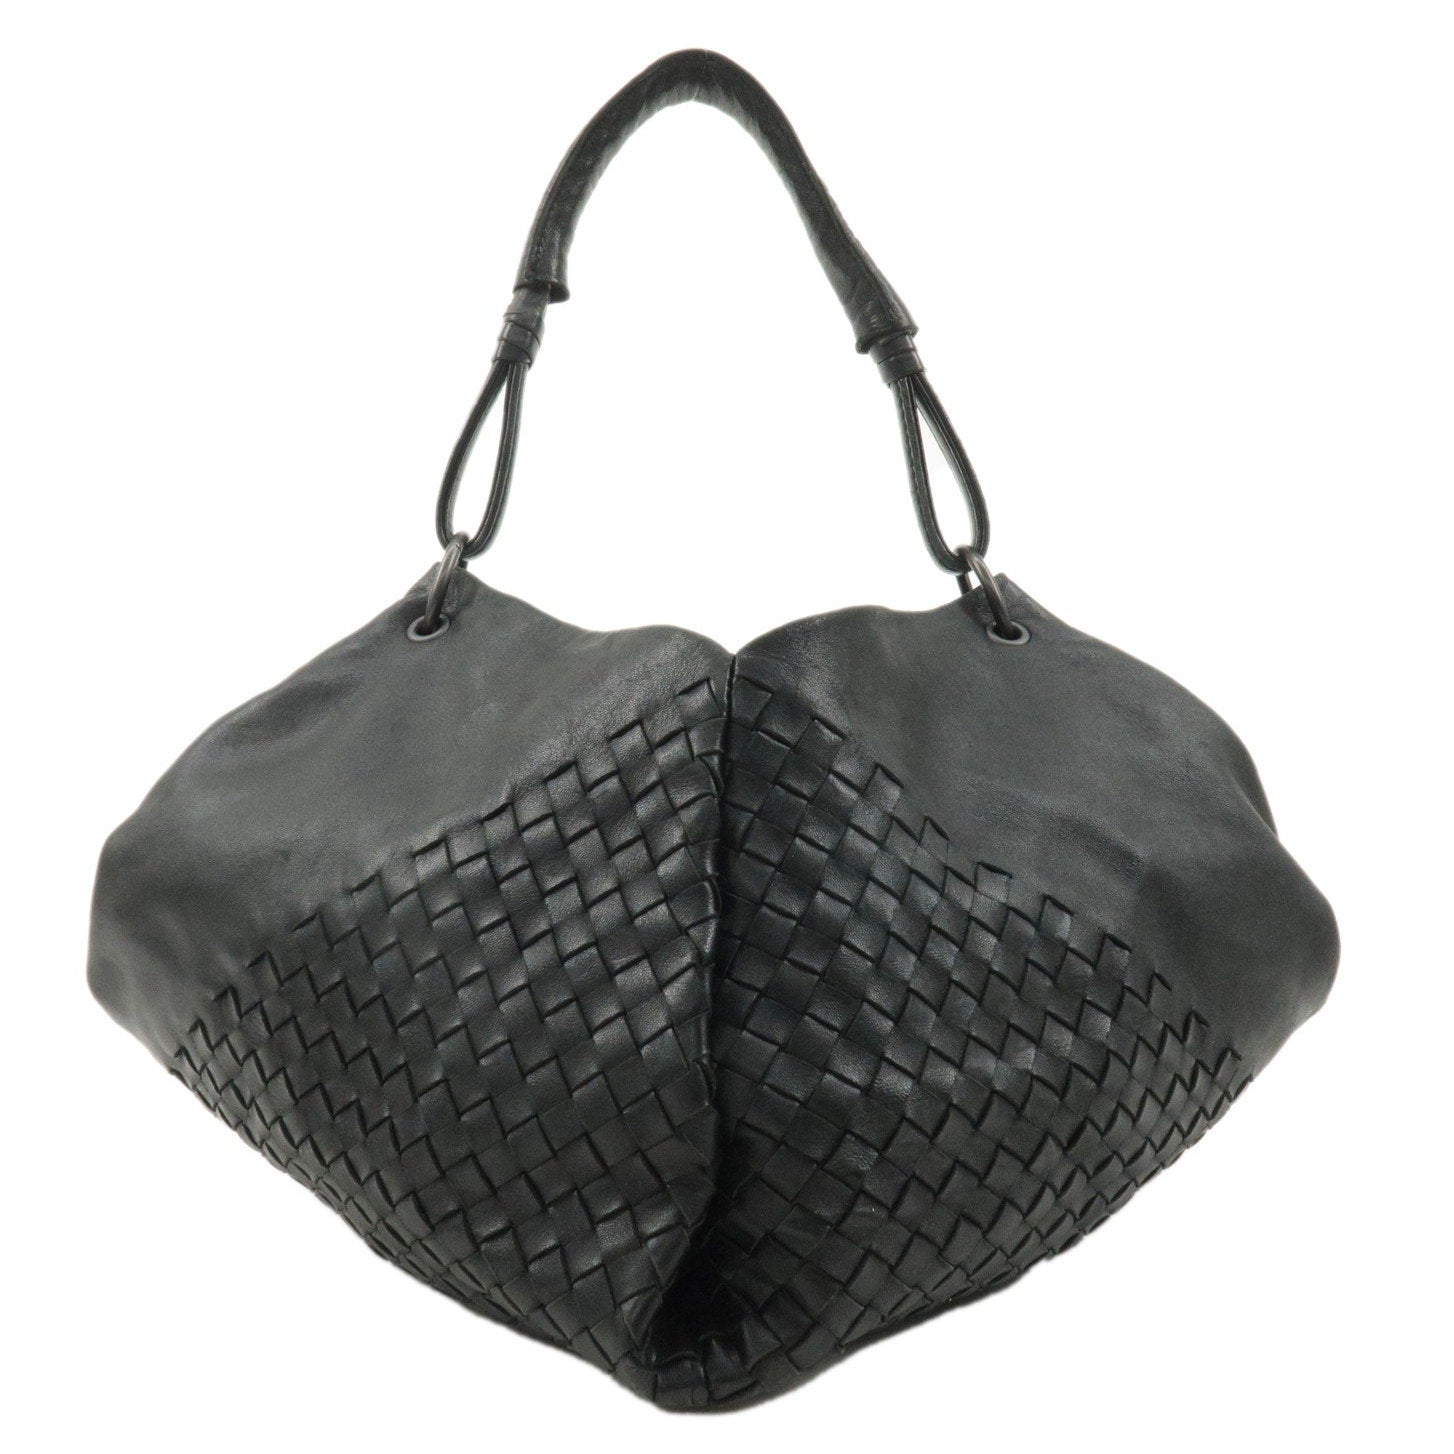 Authentic BOTTEGA VENETA Intrecciato Leather One-Shoulder Bag Black